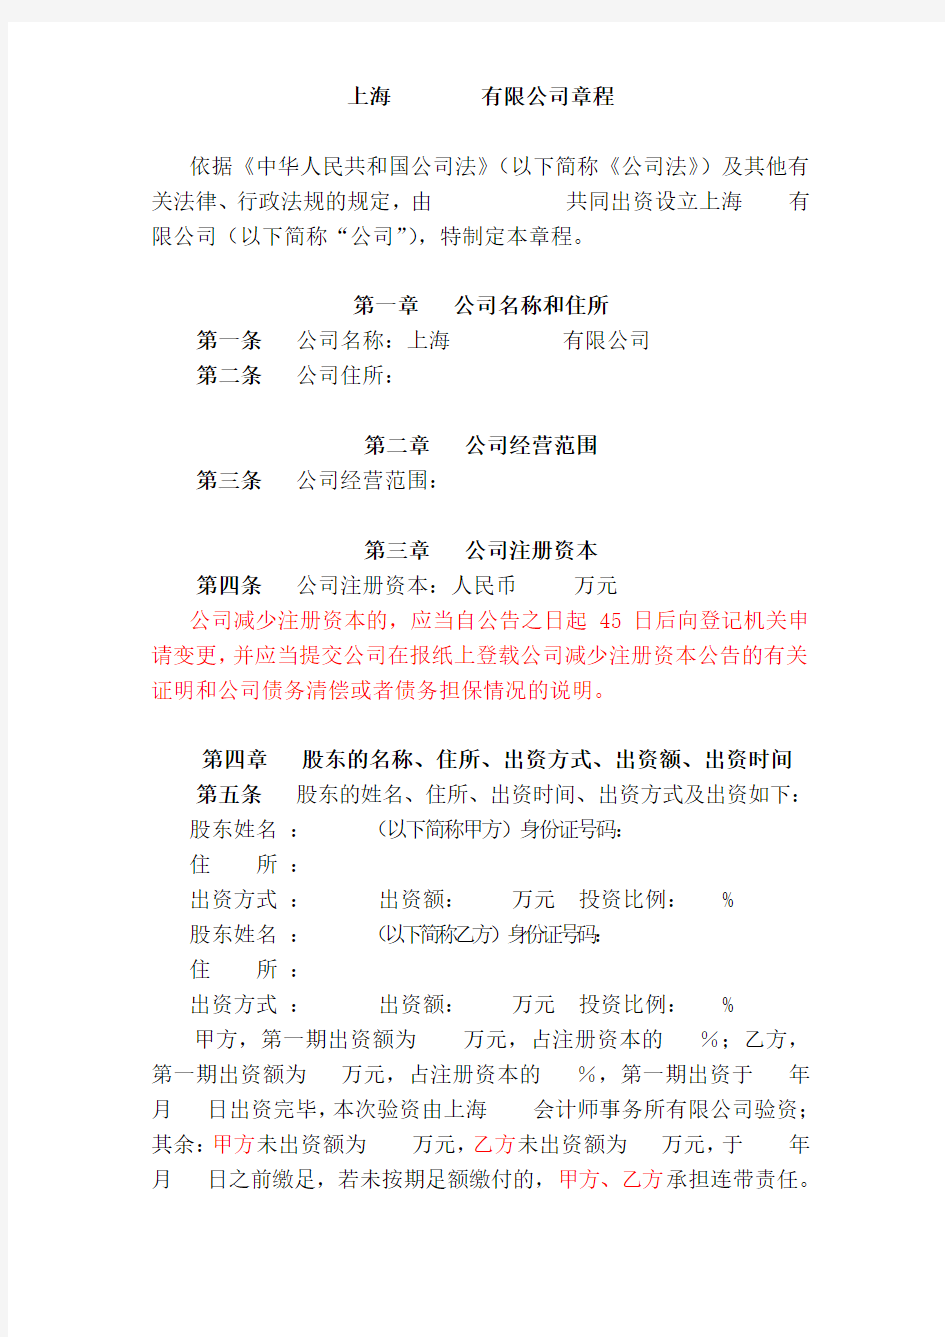 上海XX限责任公司章程(执行董事)